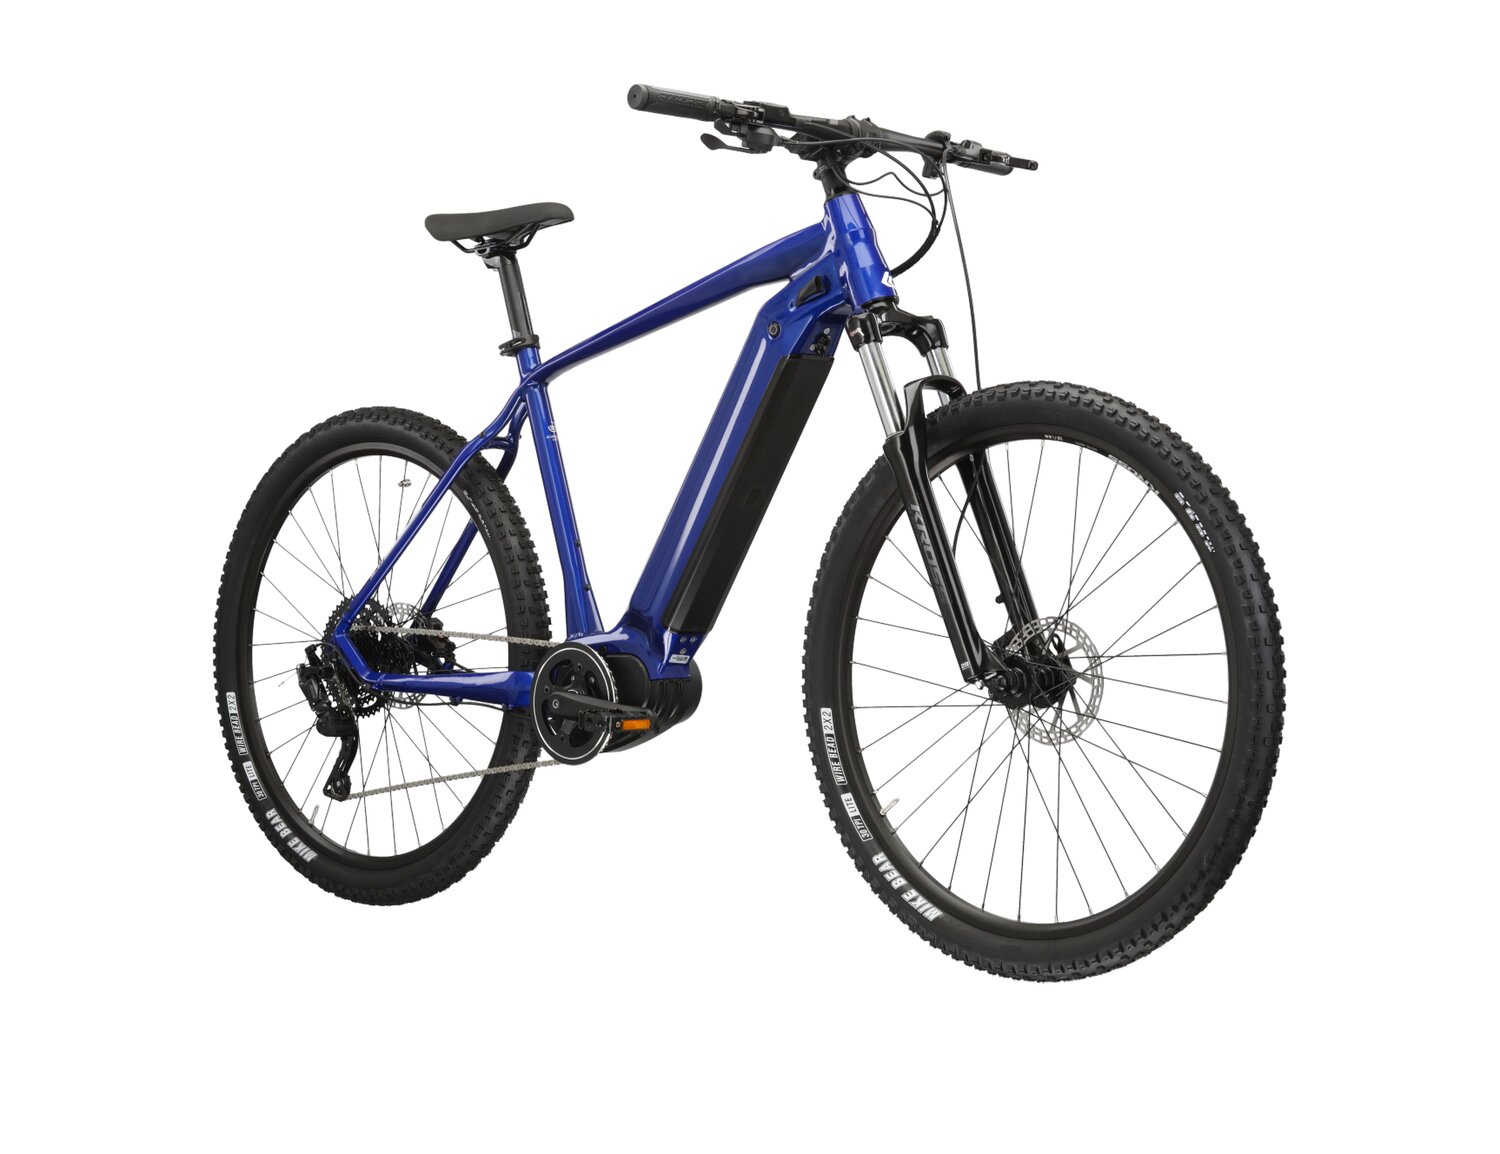 Elektryczny rower górski MTB Kross Hexagon Boost 5.0 882 Wh na aluminiowej ramie w kolorze niebieskim wyposażony w osprzęt Microshift i napęd elektryczny Bafang